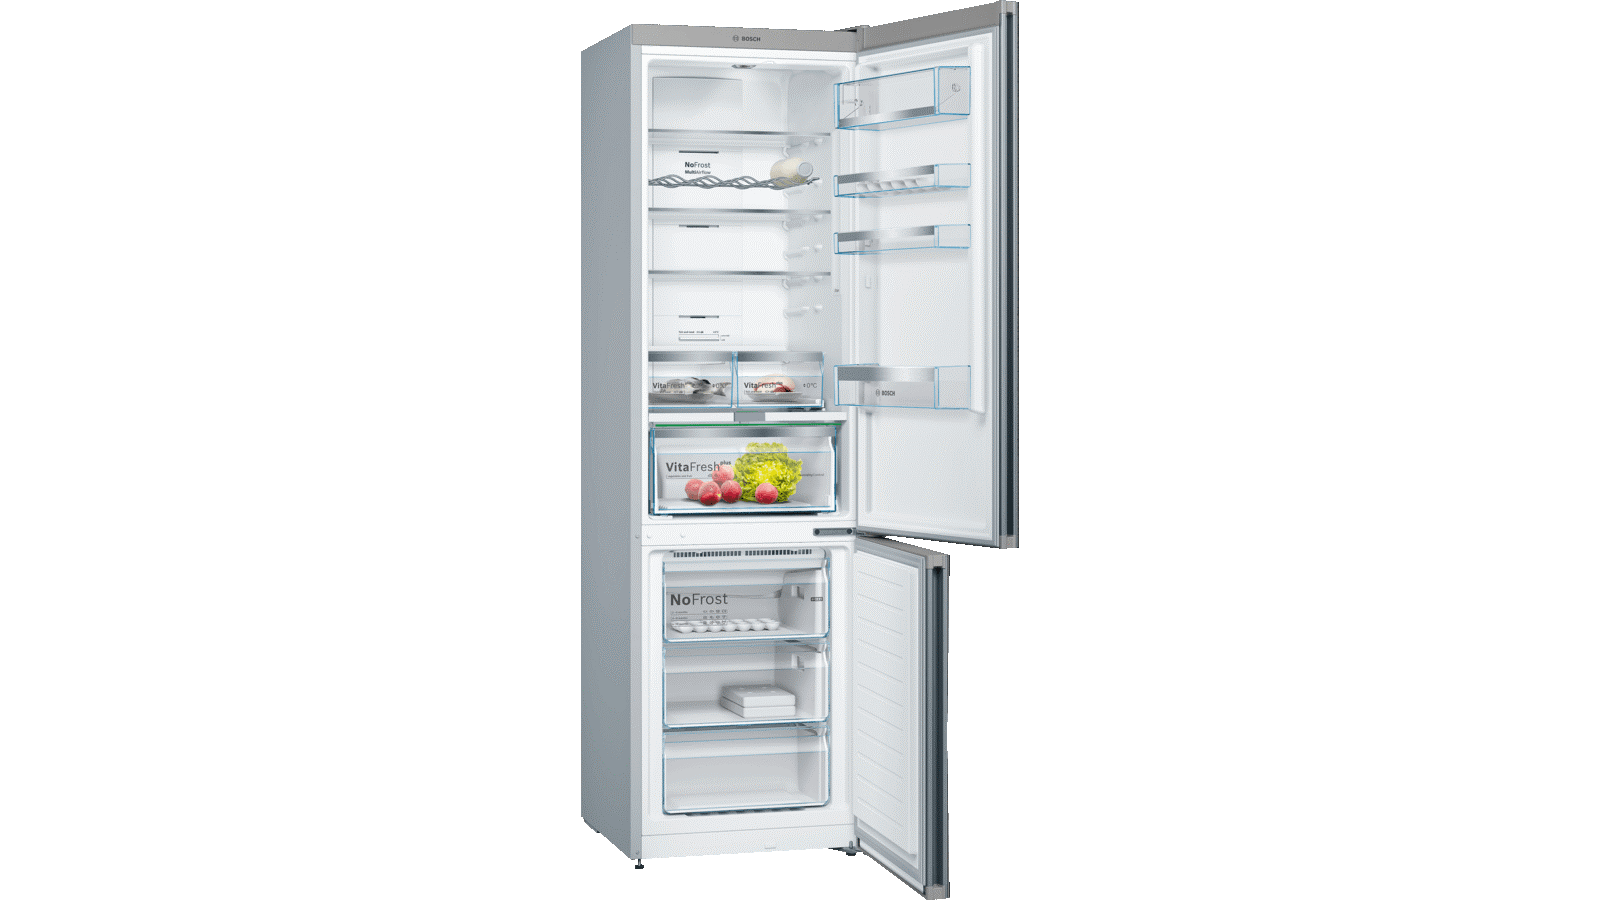 Tủ lạnh Bosch KGN39LB35 được thiết kế với nhiều ngăn cho nhiều mục đích sử dụng khác nhau